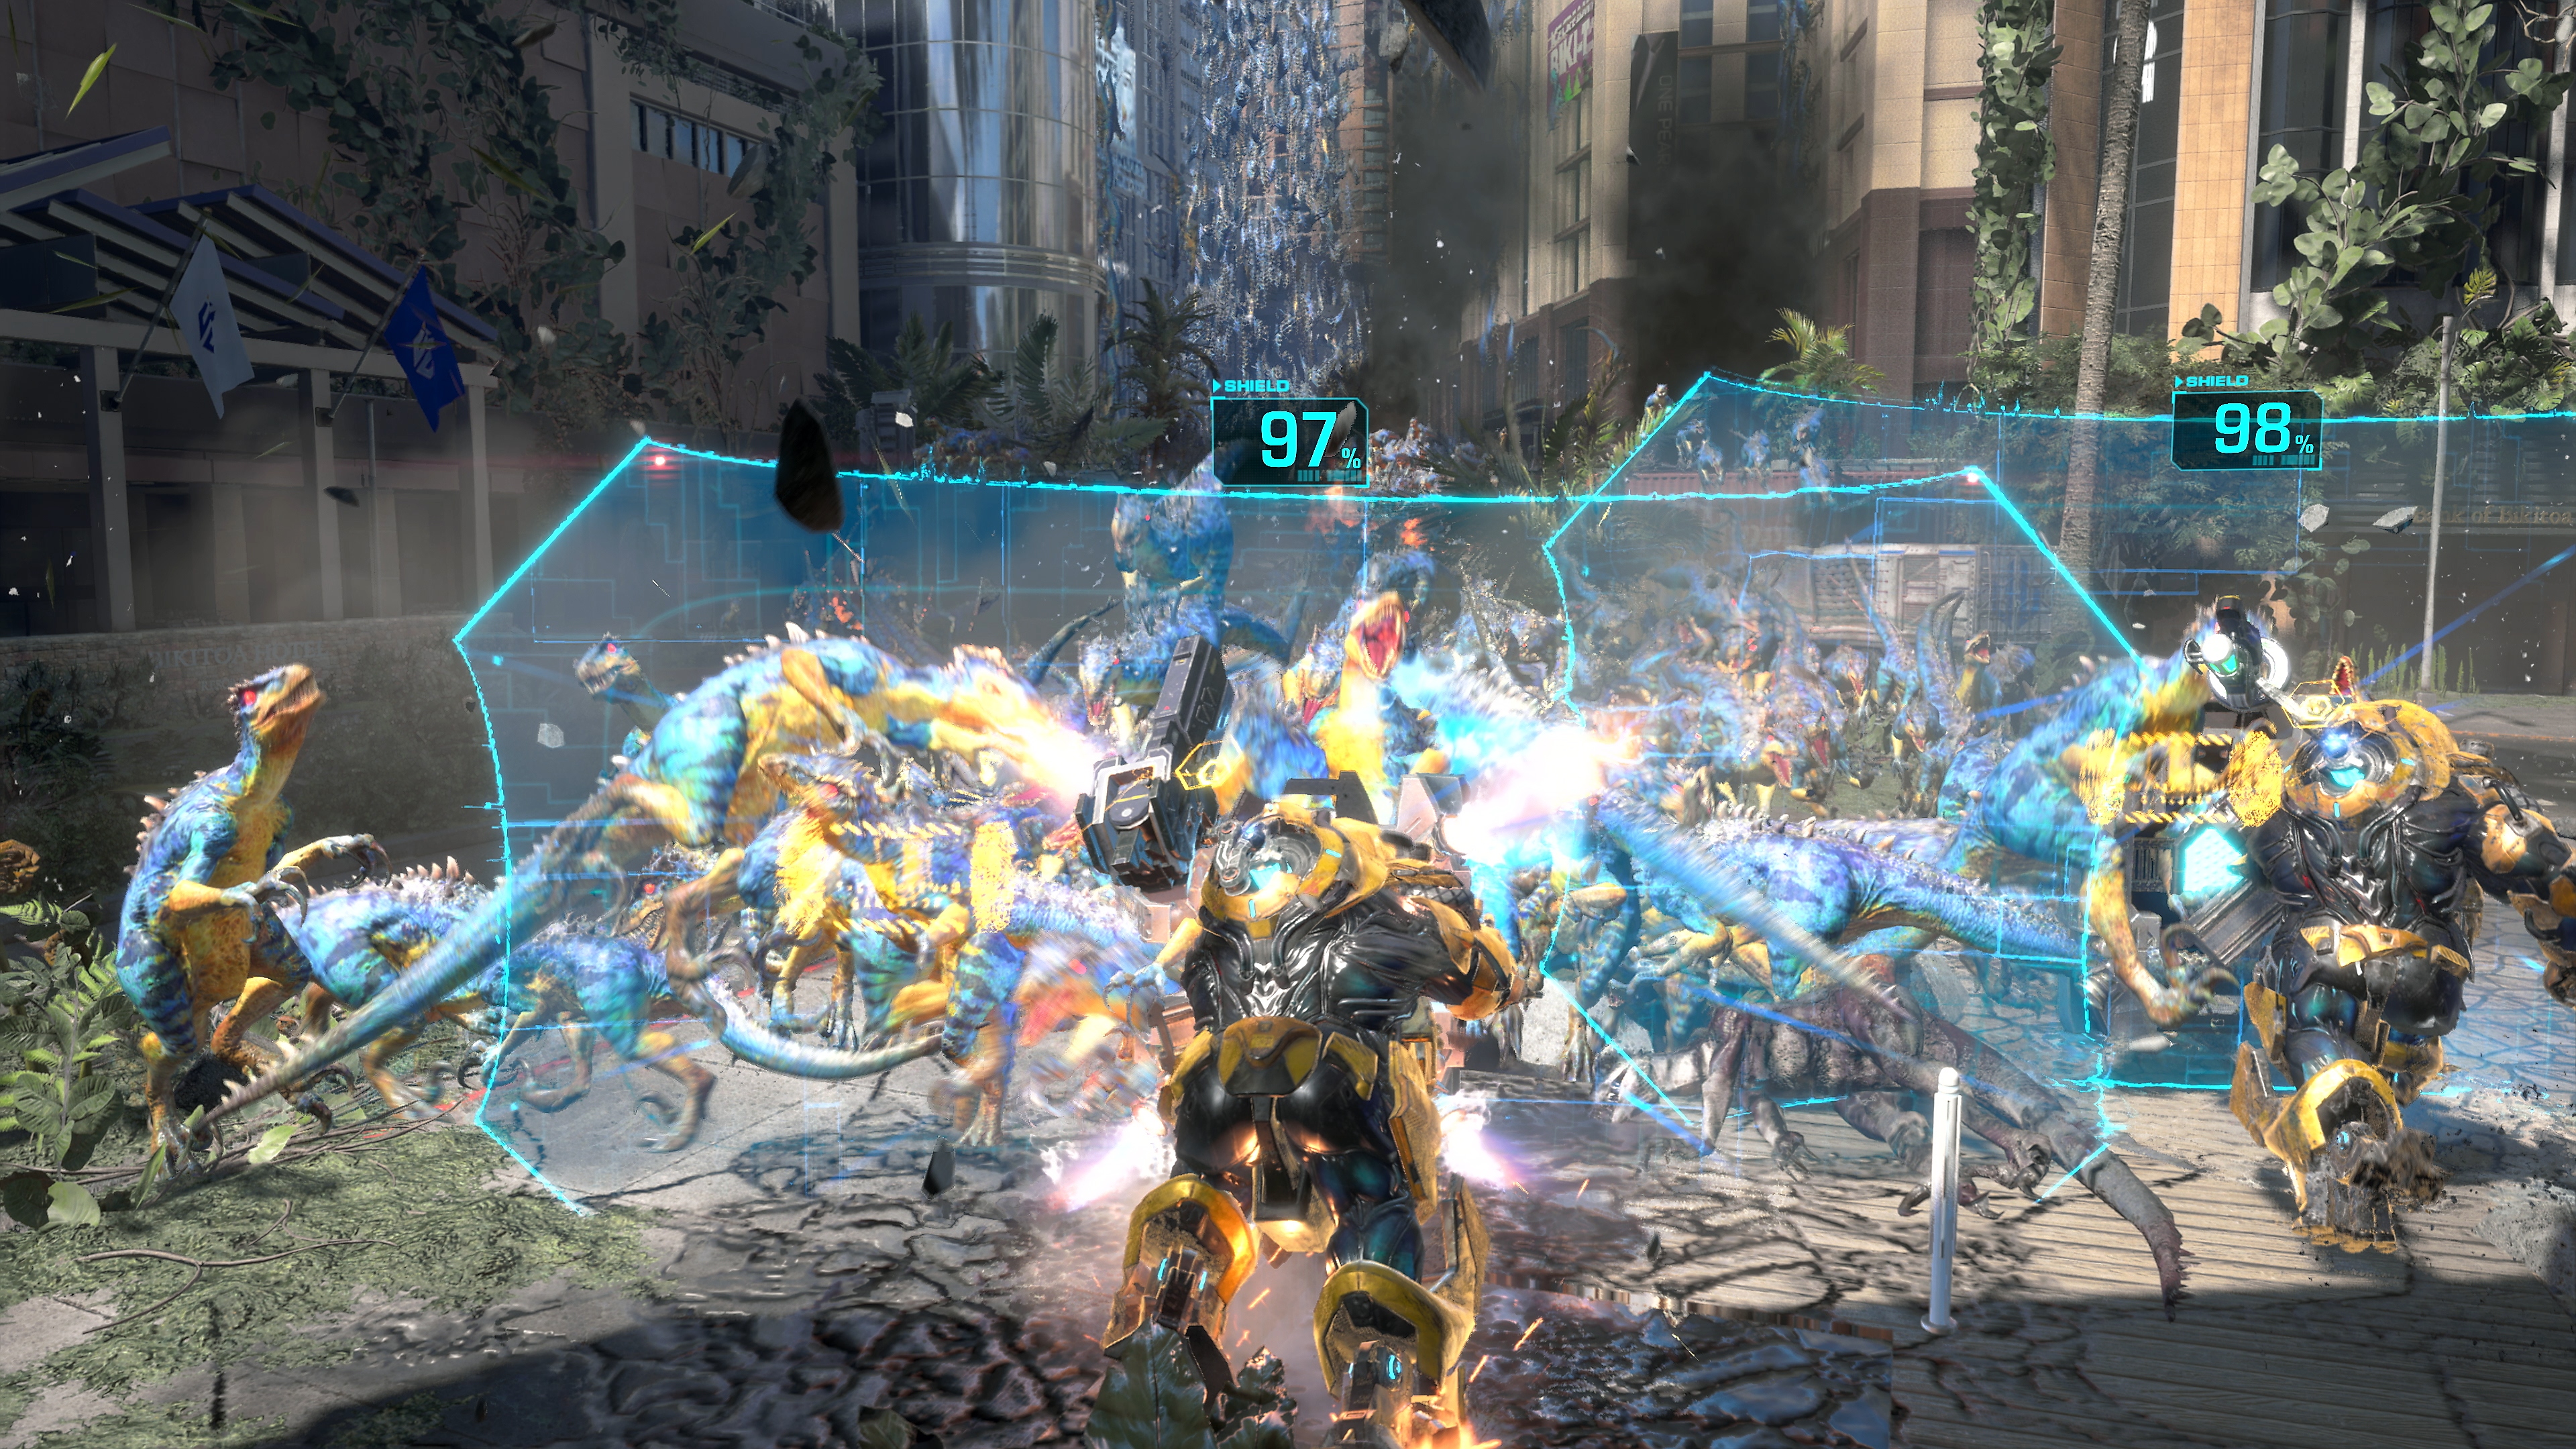 لقطة شاشة للعبة Exoprimal يظهر فيها حشد من الديناصورات يركض نحو حواجز درع شفافة زرقاء